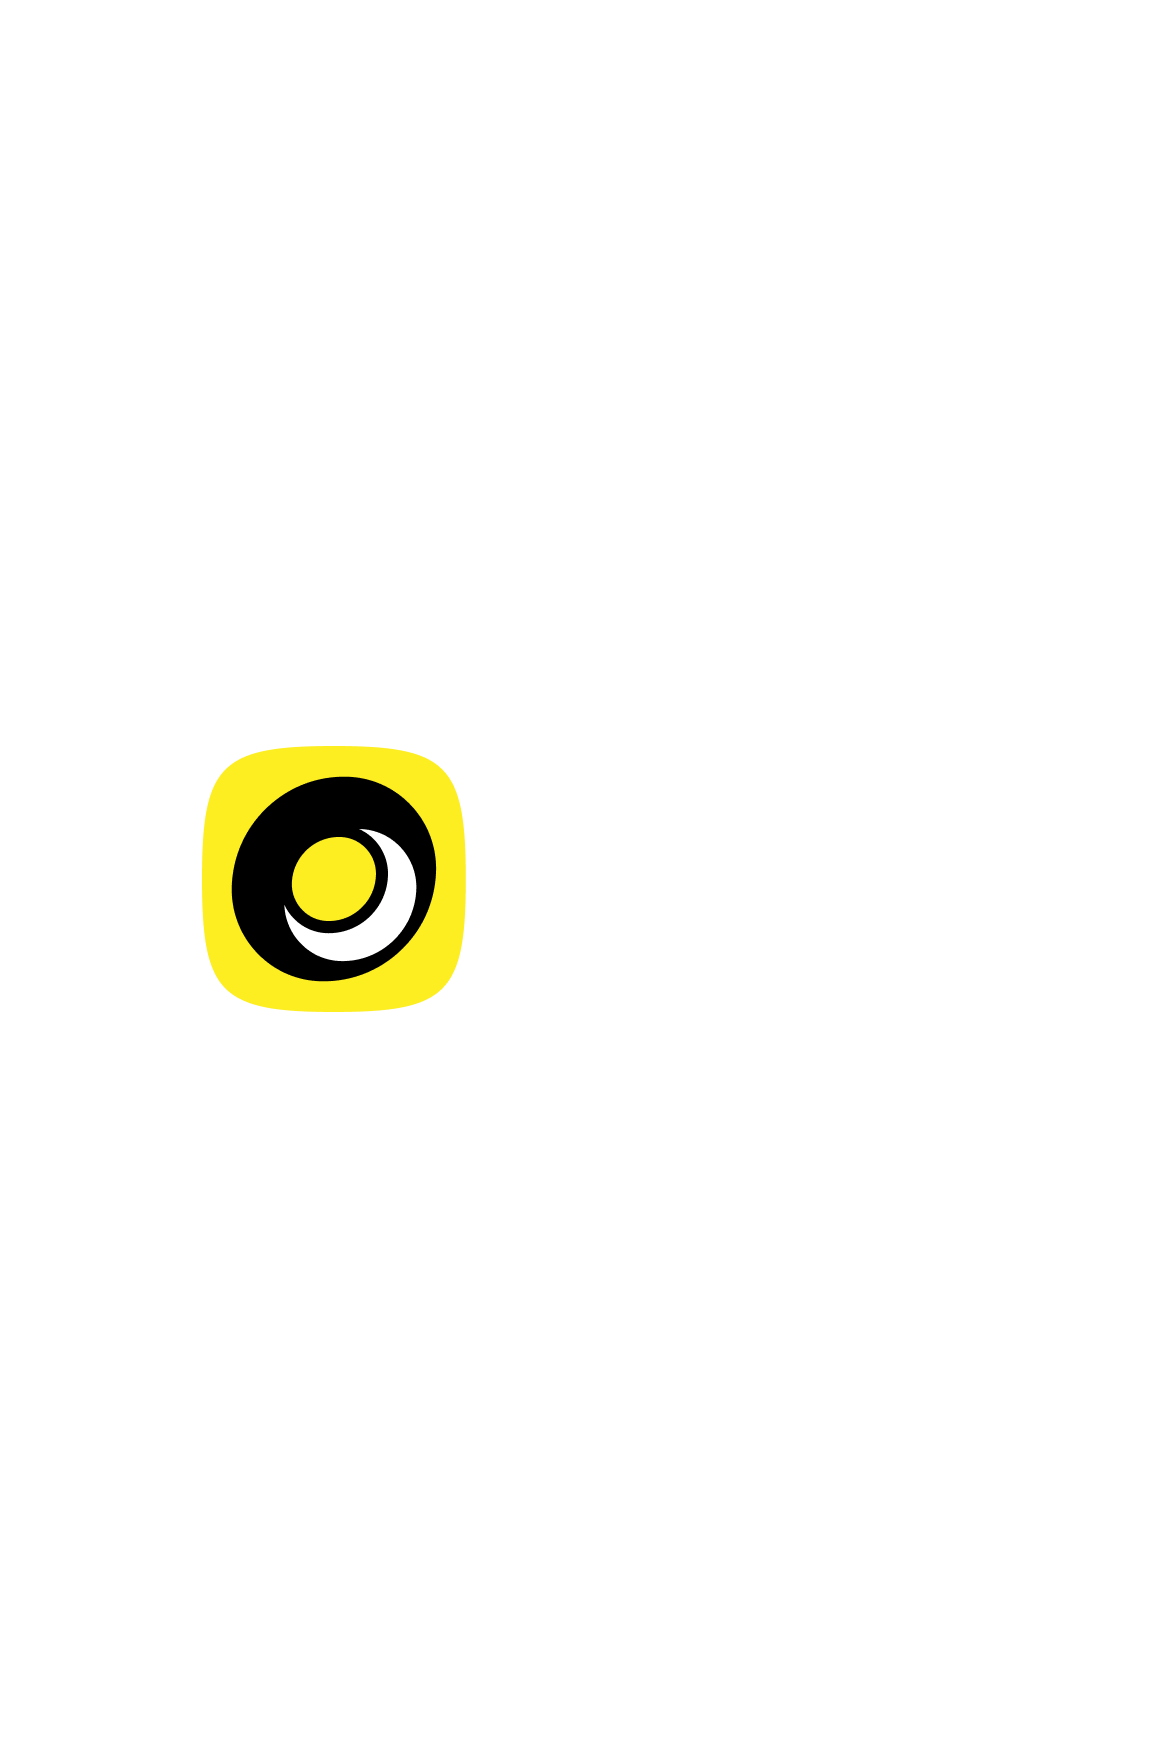 Moonwin